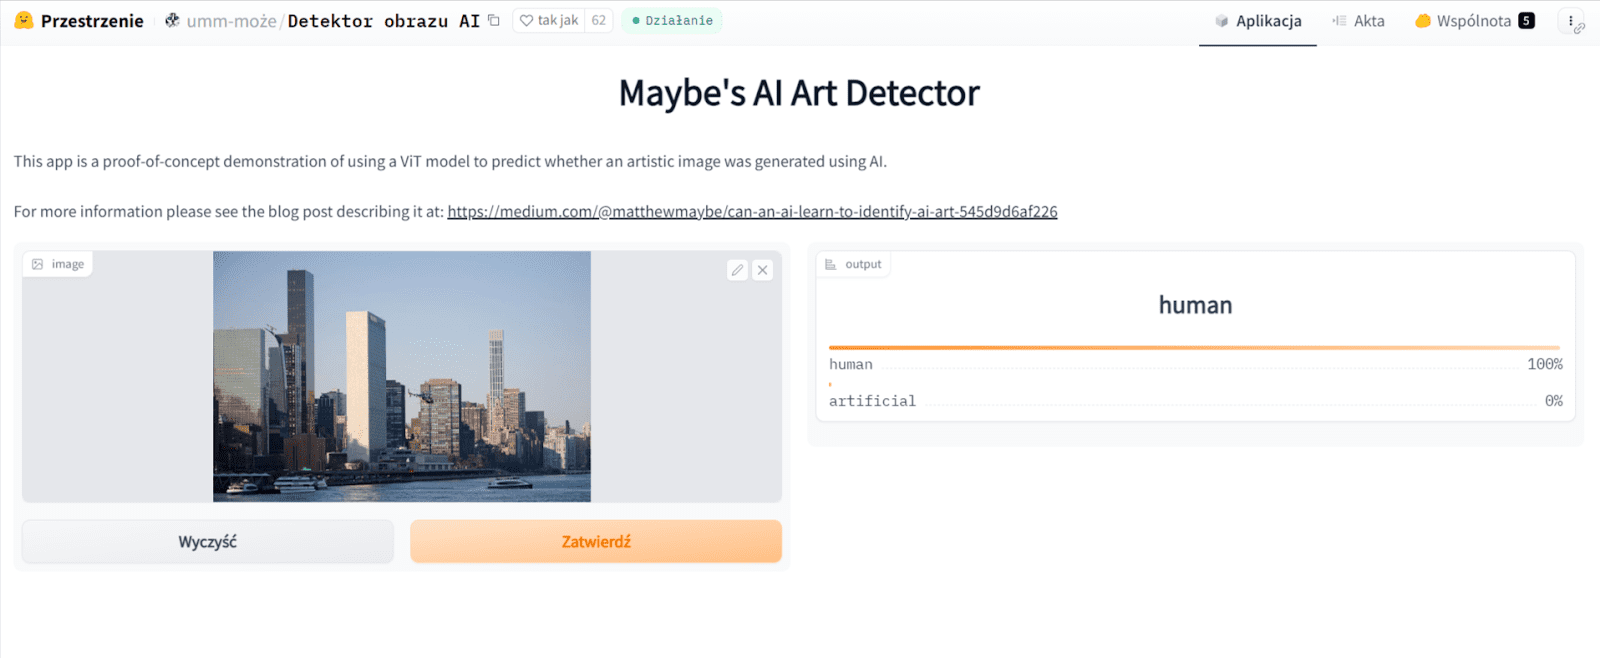 Zrzut ekranu z narzędzia Maybe’s AI Art Detector. W tym przypadku zastosowano przykładowe zdjęcie miasta, a strona oceniła, że fotografia jest dziełem człowieka.